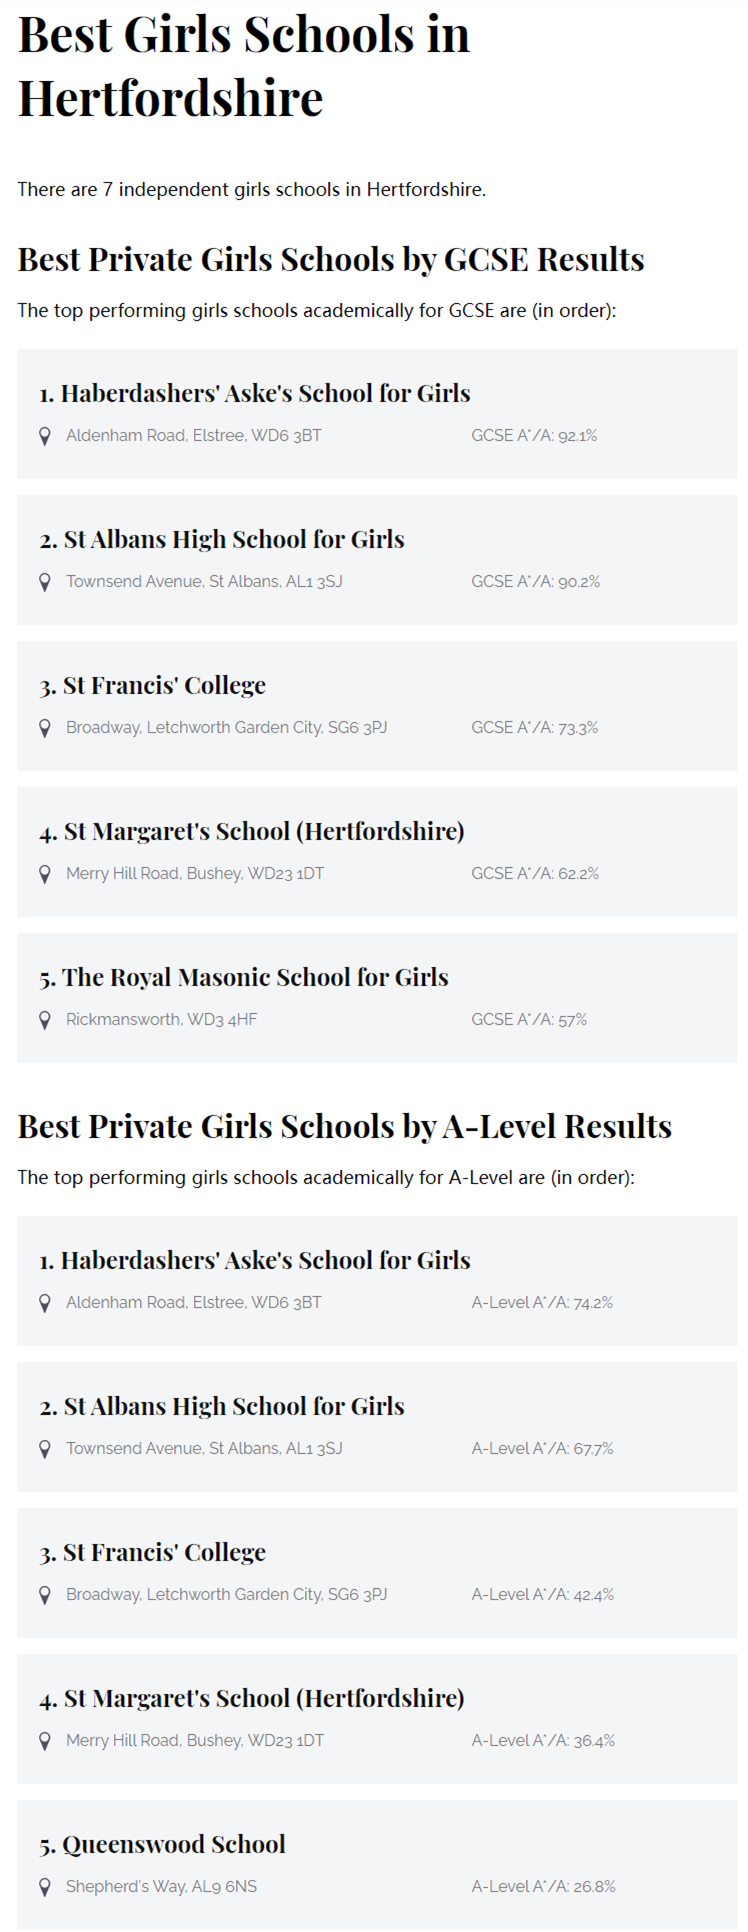 赫特福德郡排名前3的英国女私校有哪些